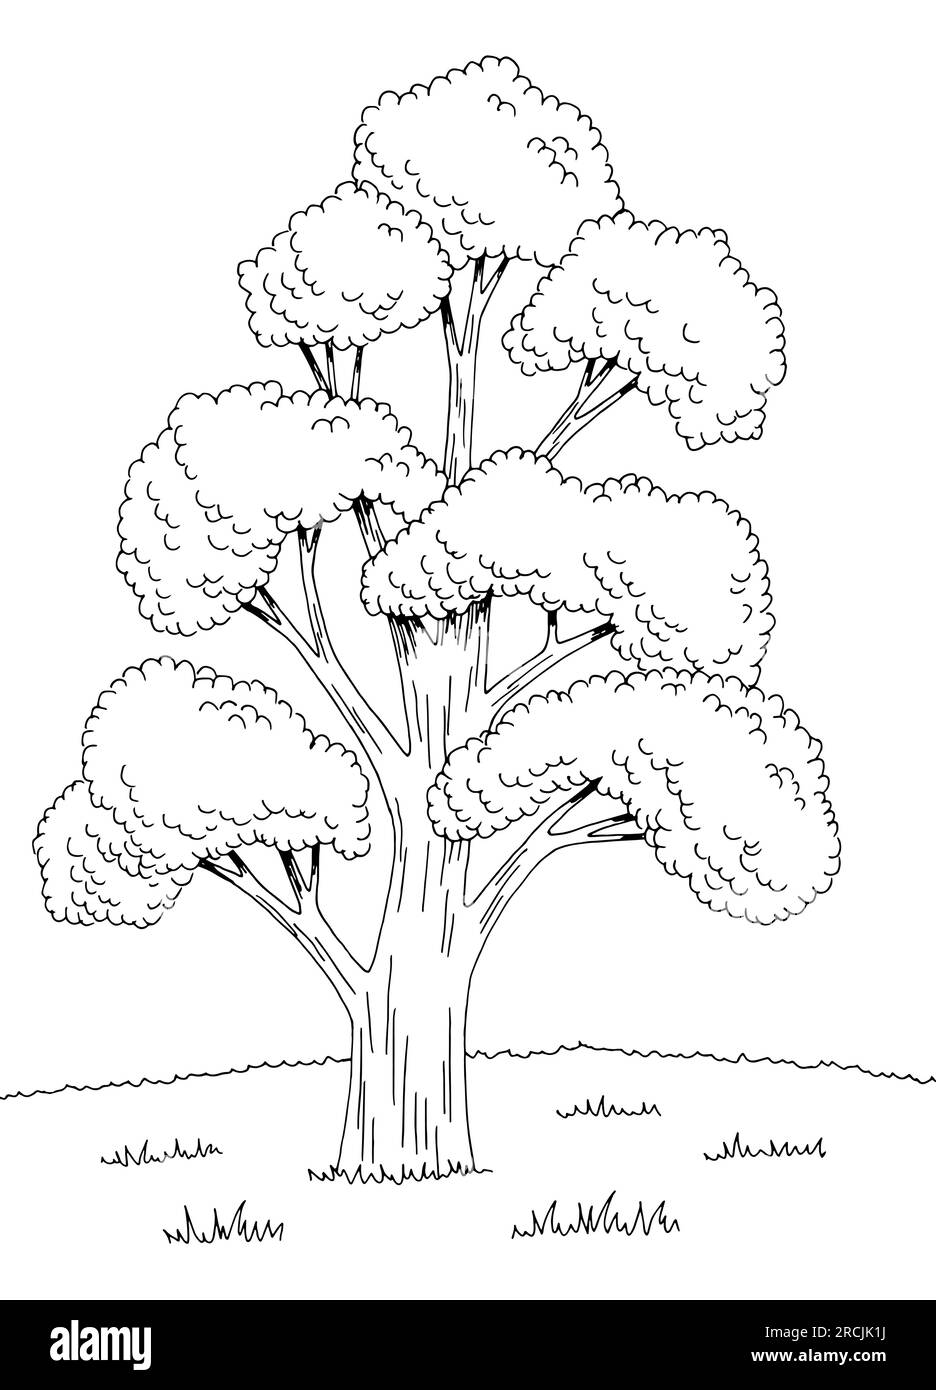 Ginko bilbao tree graphic black white landscape sketch illustration vector Stock Vector